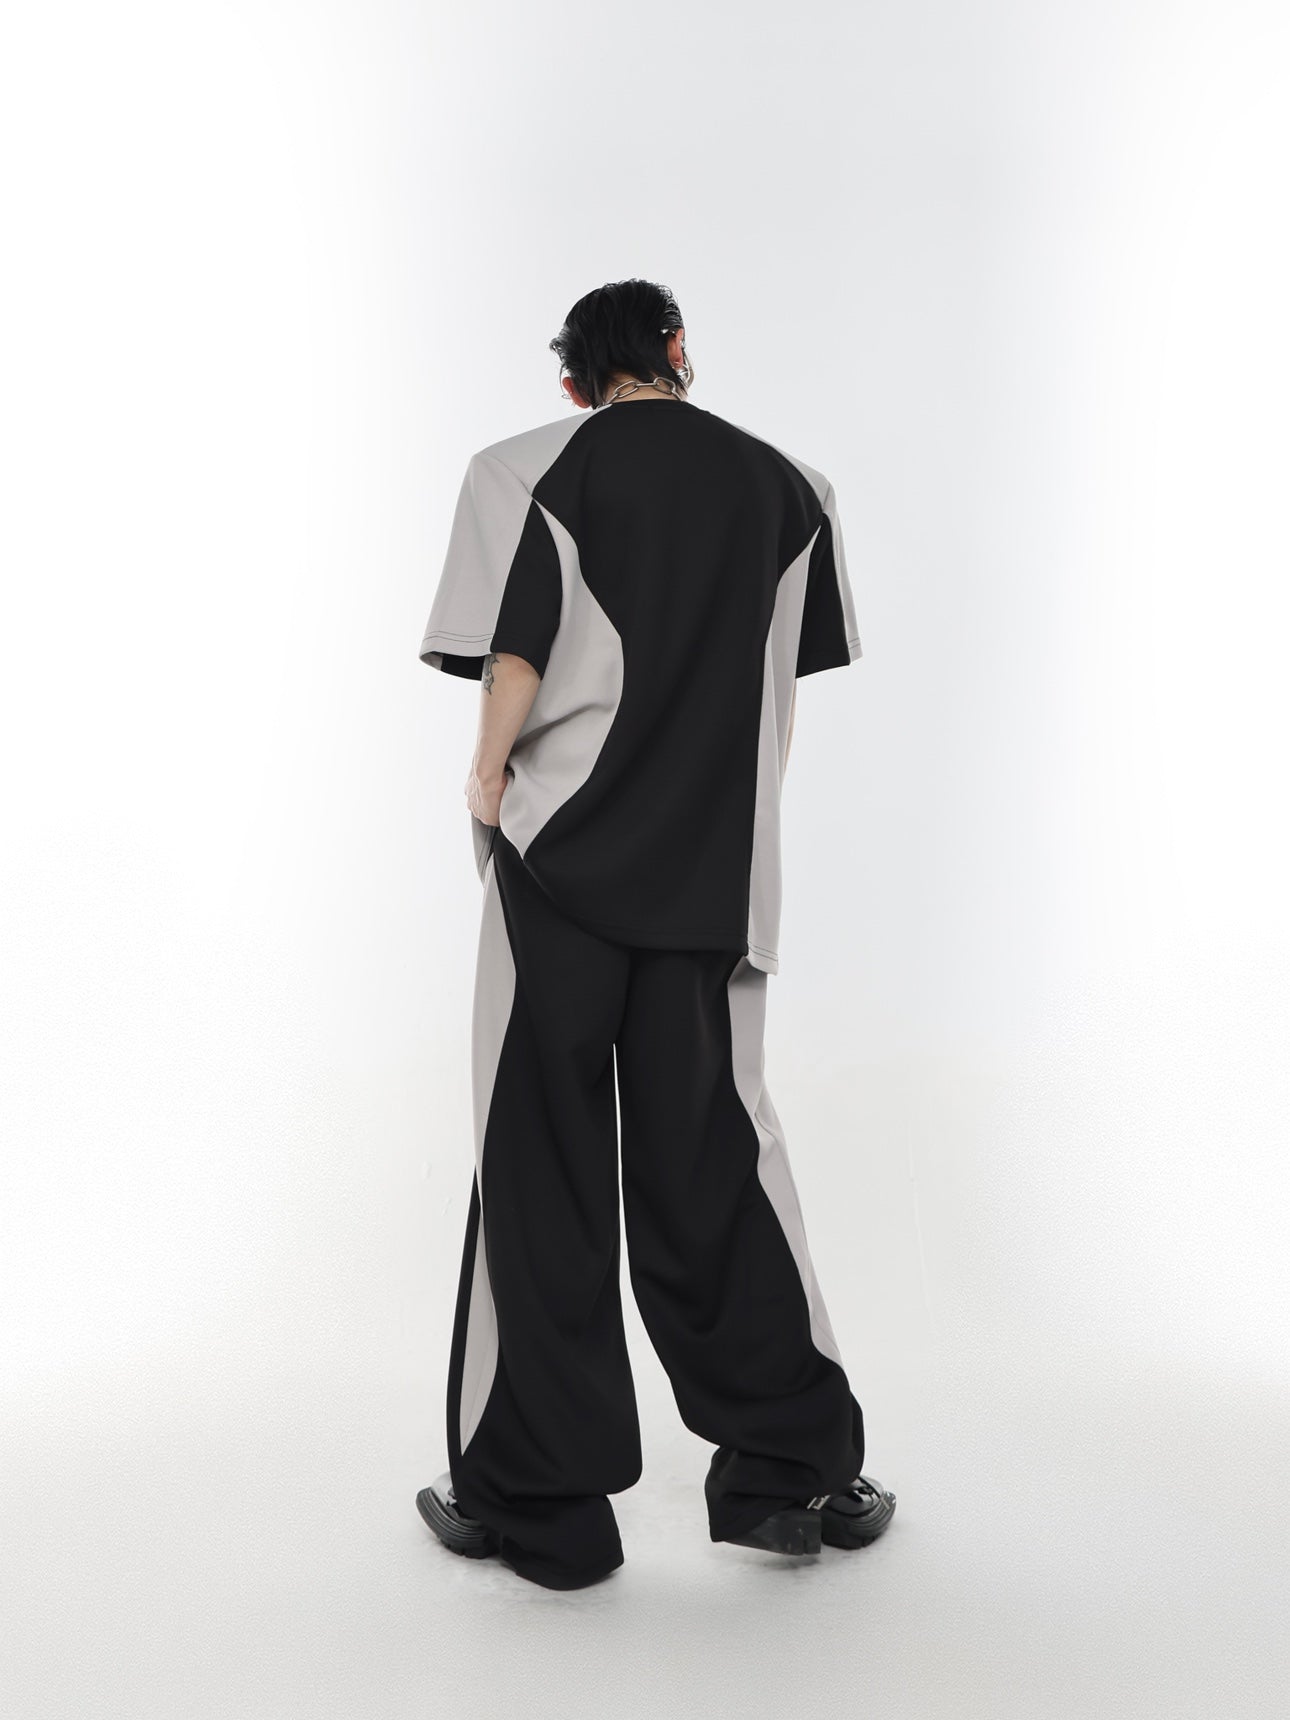 Argue Culture Two Toned T-Shirt & Sports Pants Set Korean Street Fashion Clothing Set By Argue Culture Shop Online at OH Vault